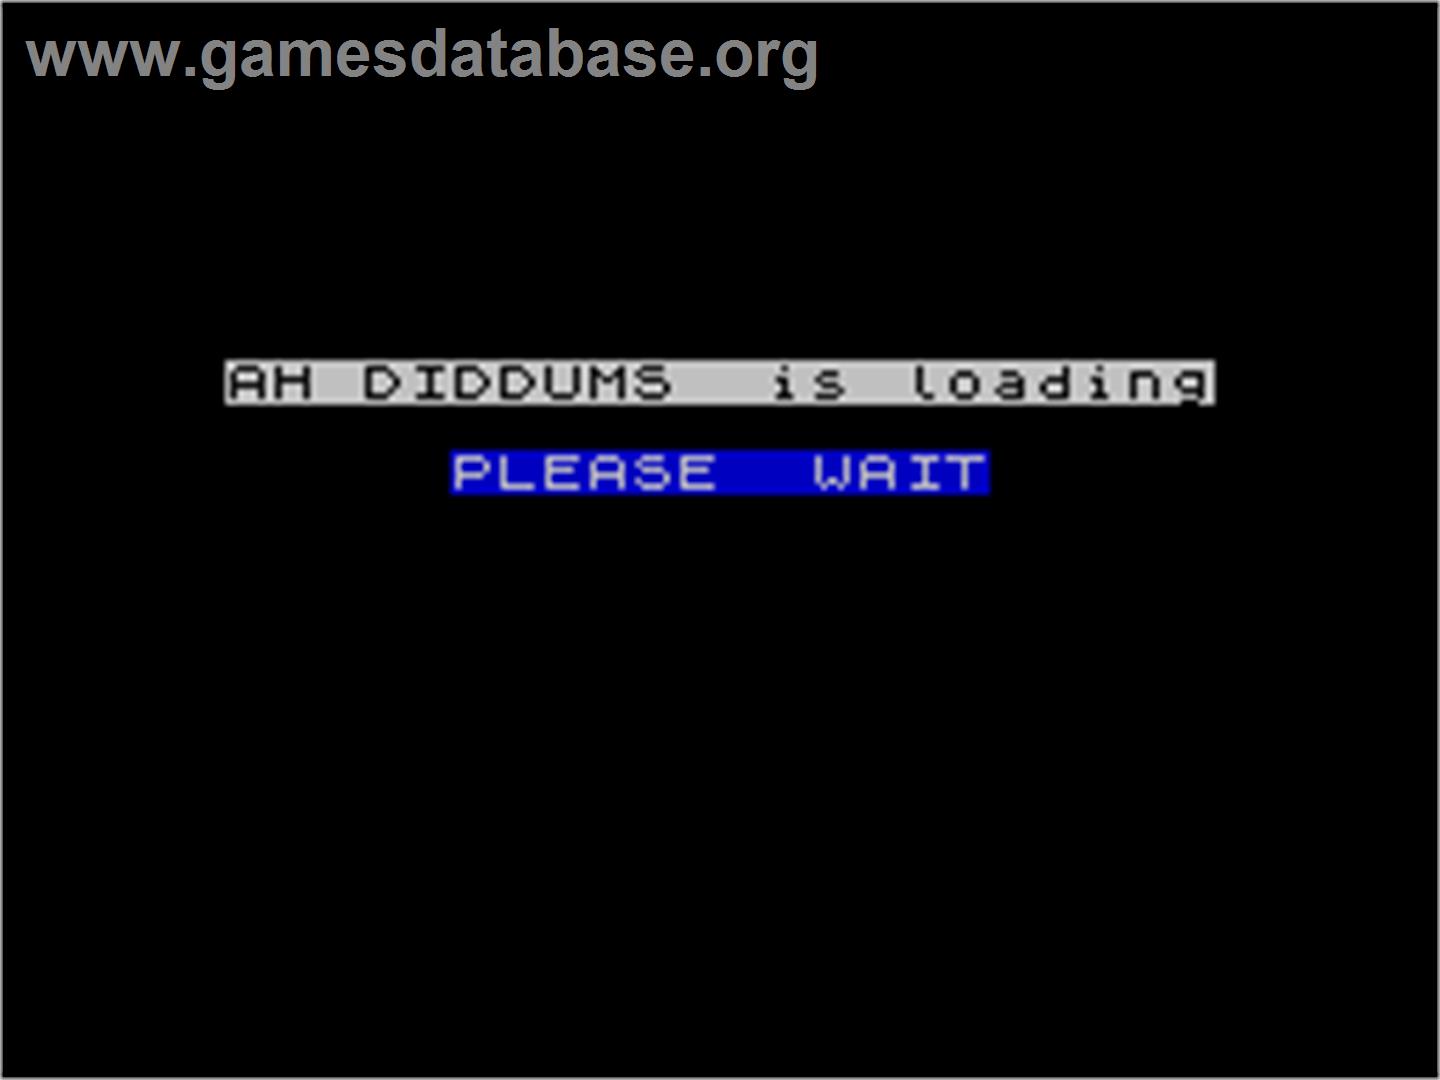 Ah Diddums - Sinclair ZX Spectrum - Artwork - Title Screen